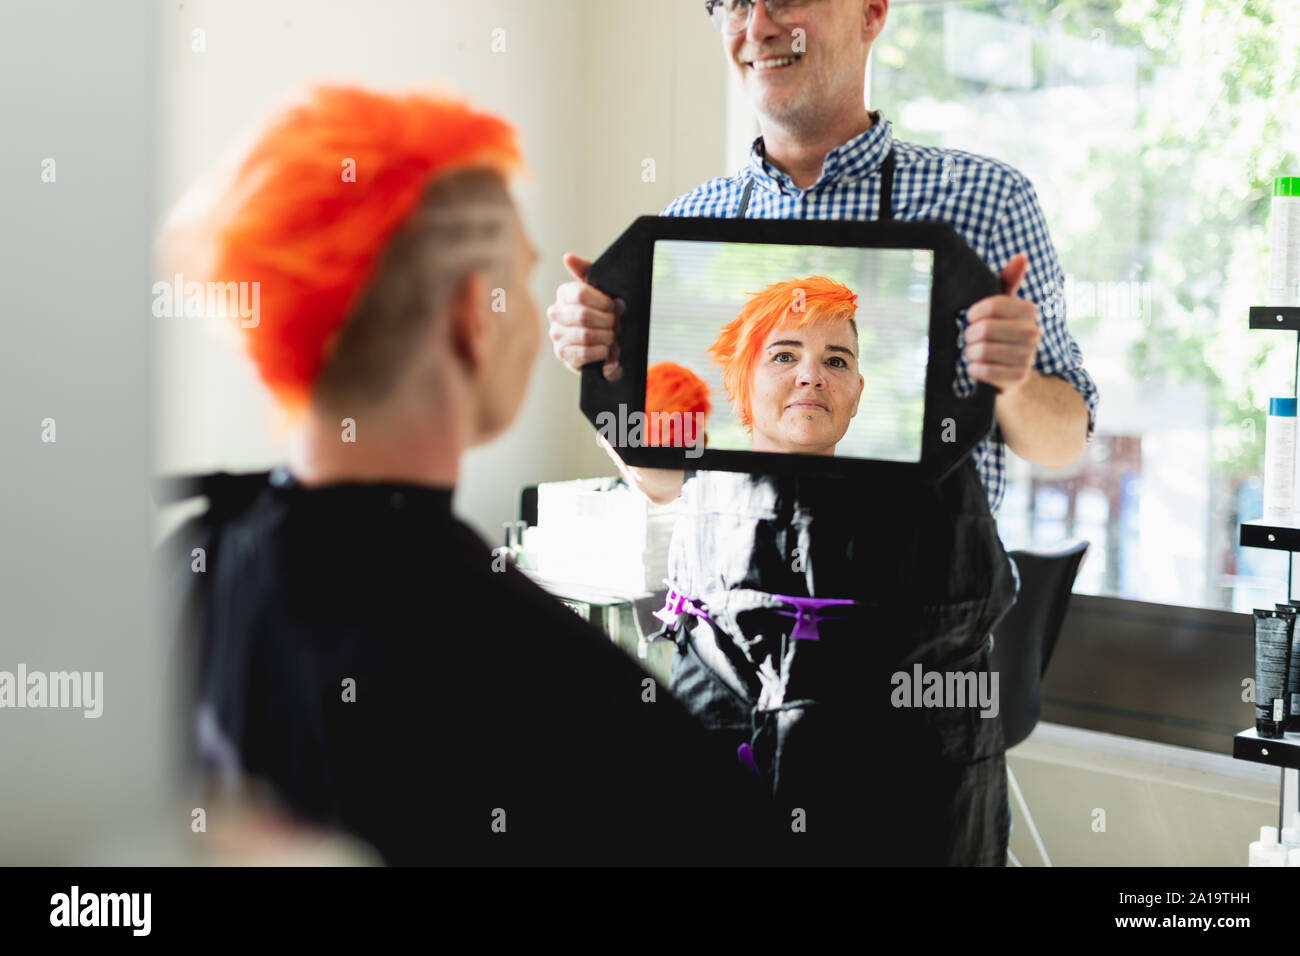 Coiffure hommes et femmes client en coiffure Banque D'Images